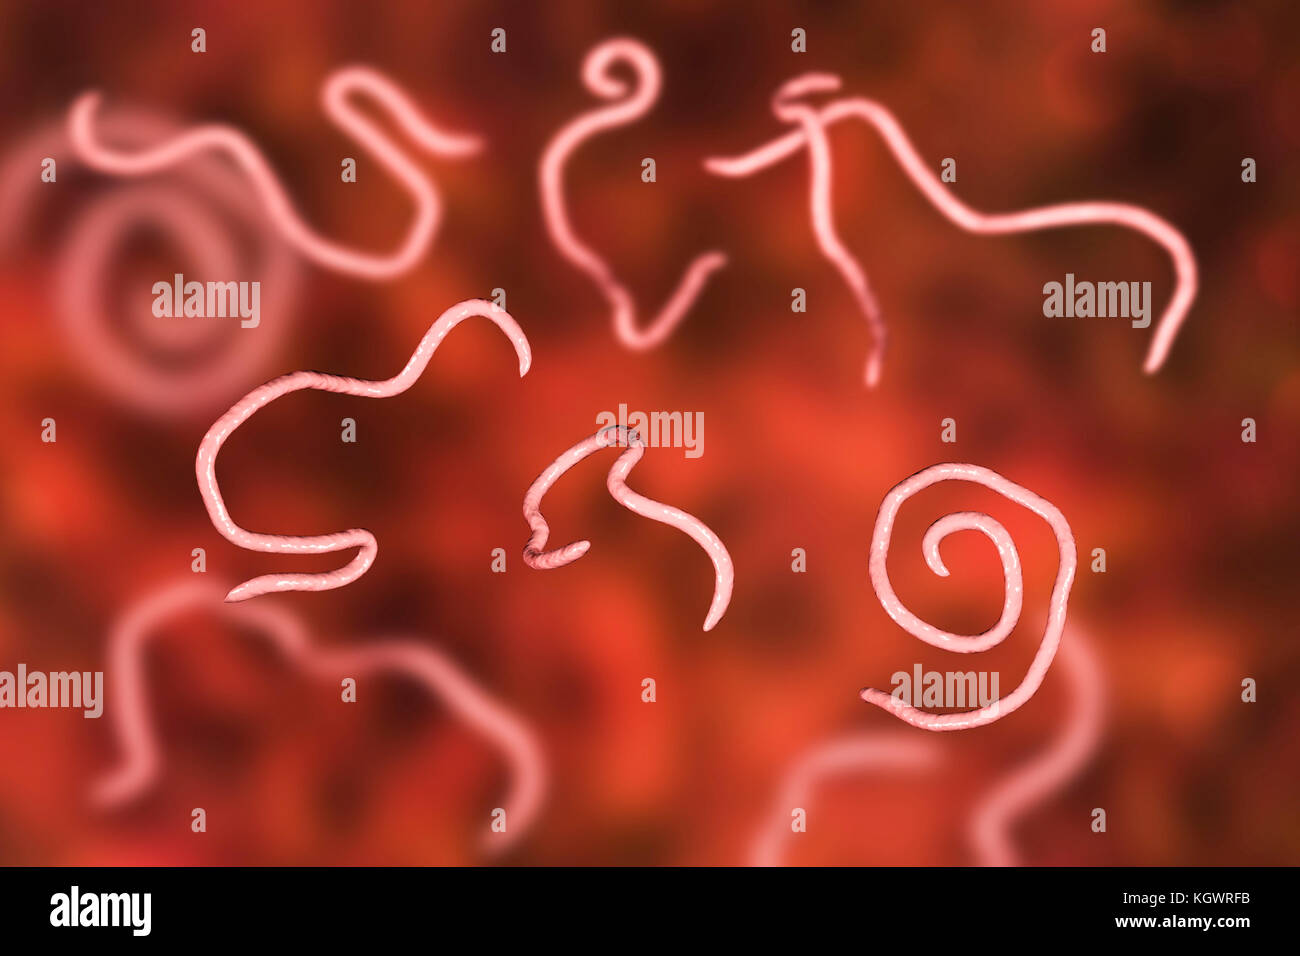 Threadworms, illustration de l'ordinateur. Threadworms sont les vers nématodes qui parasitent le gros intestin et le caecum de nombreux animaux. Chez les humains qu'elles provoquent l'infection commune entérobiase. Les Nématodes sont des vers non segmentés qui peuvent être libres ou parasites vivant selon les espèces. Banque D'Images